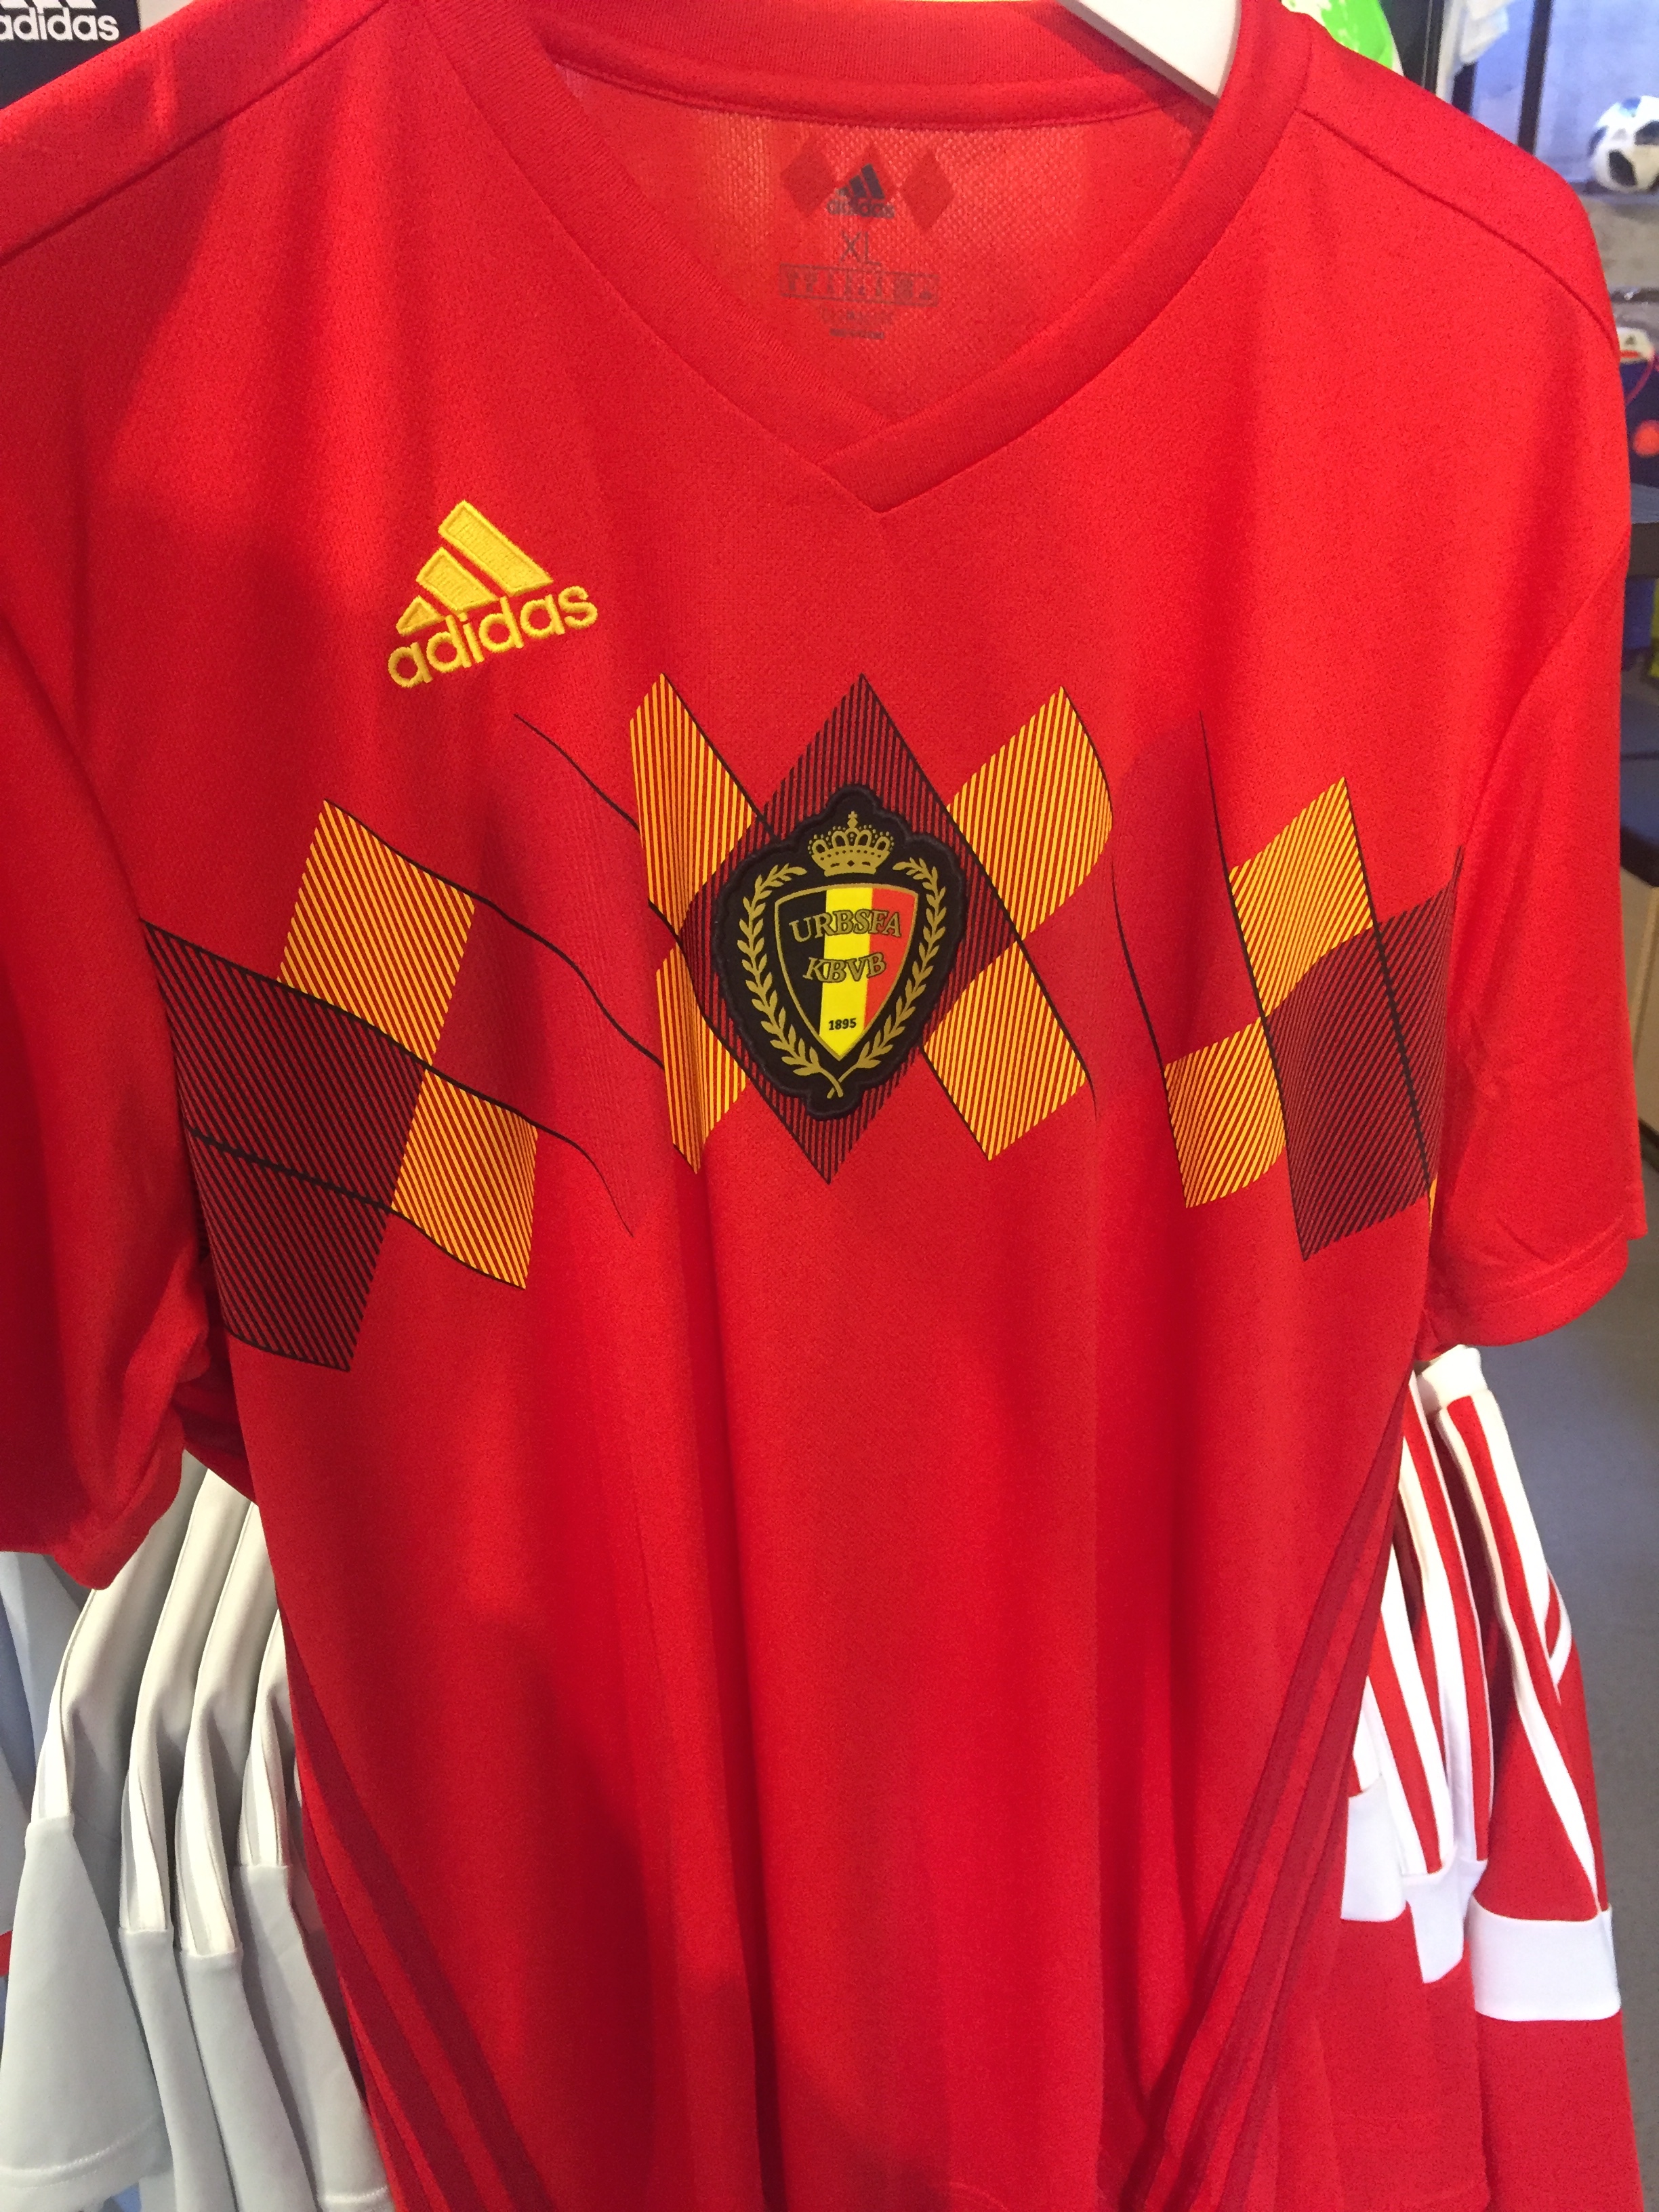 belgium home jersey